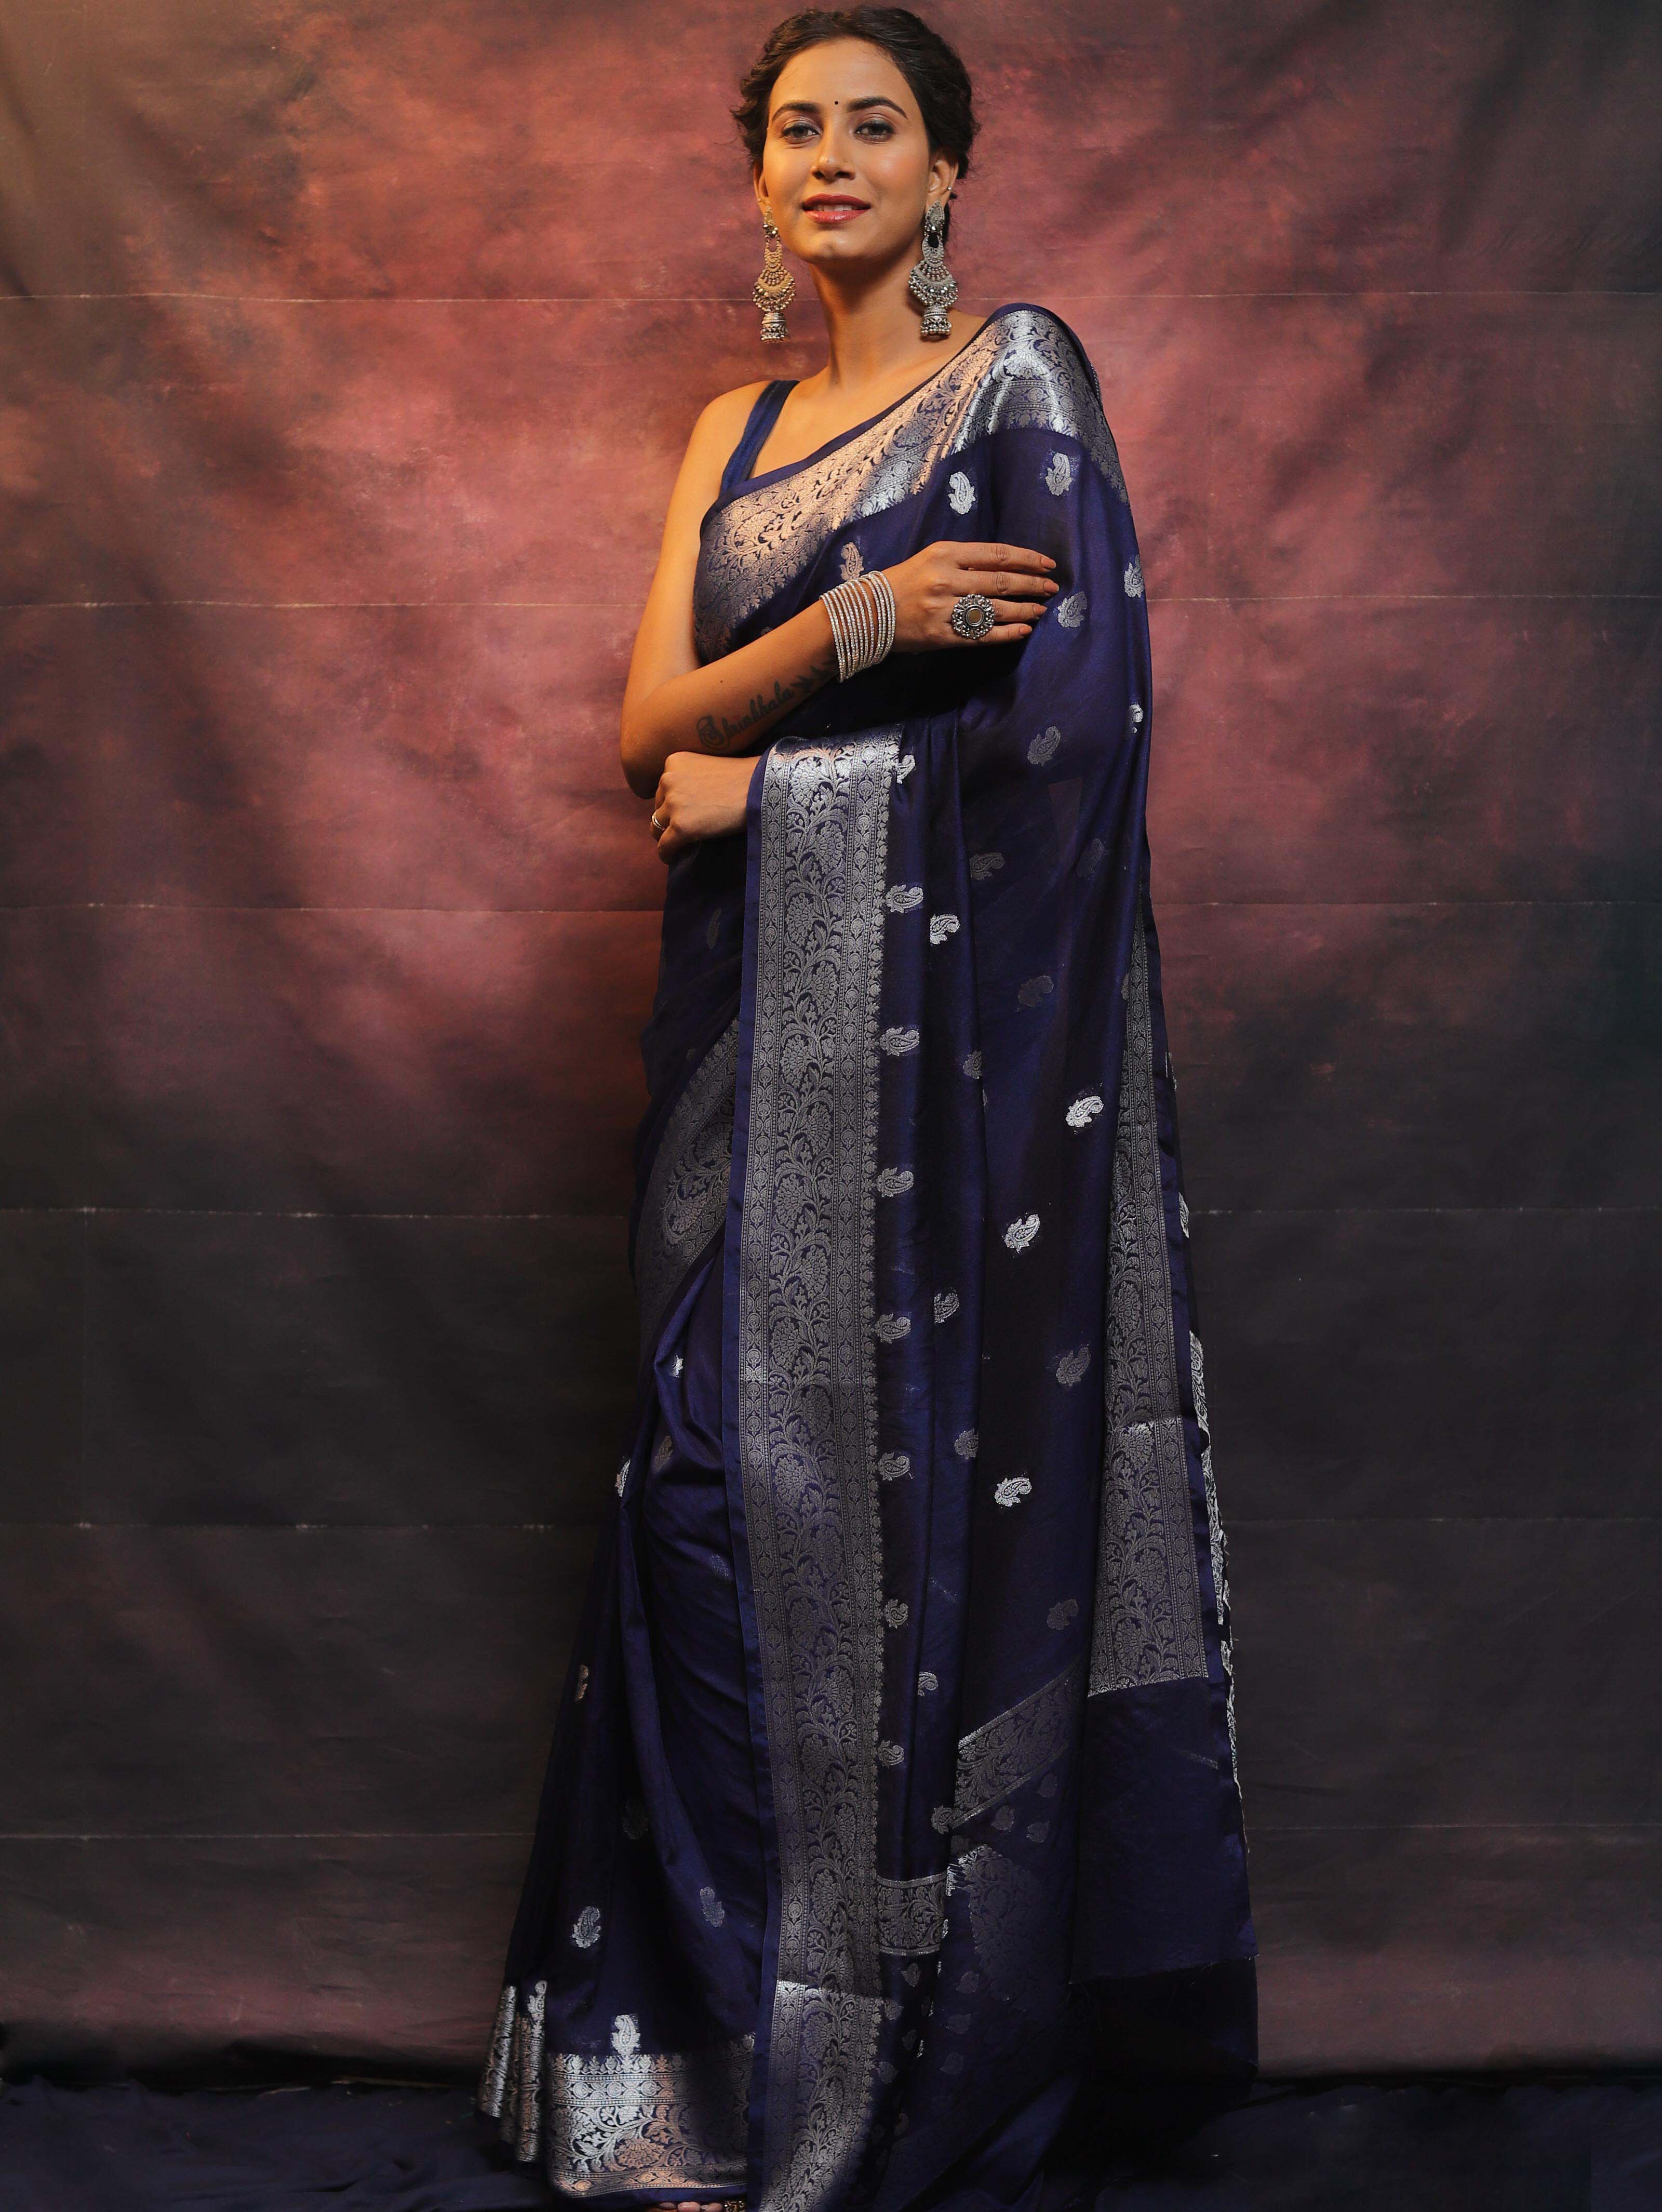 Banarasee Handwoven Semi-Chiffon Saree With Silver Zari Work-Blue